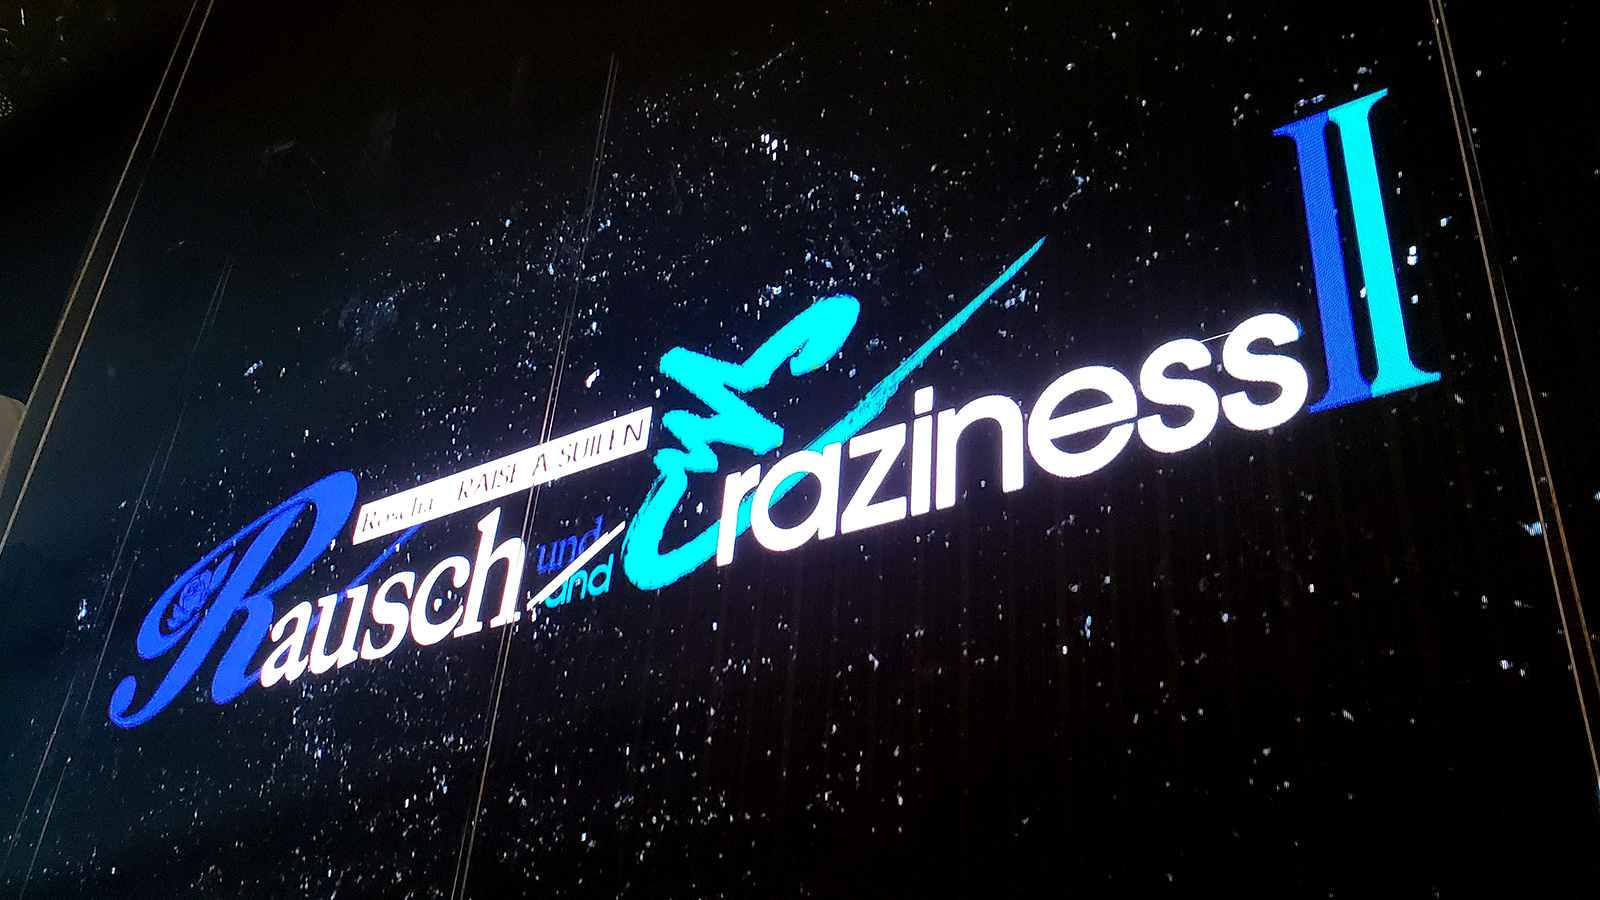 Rausch und/and Craziness Ⅱ